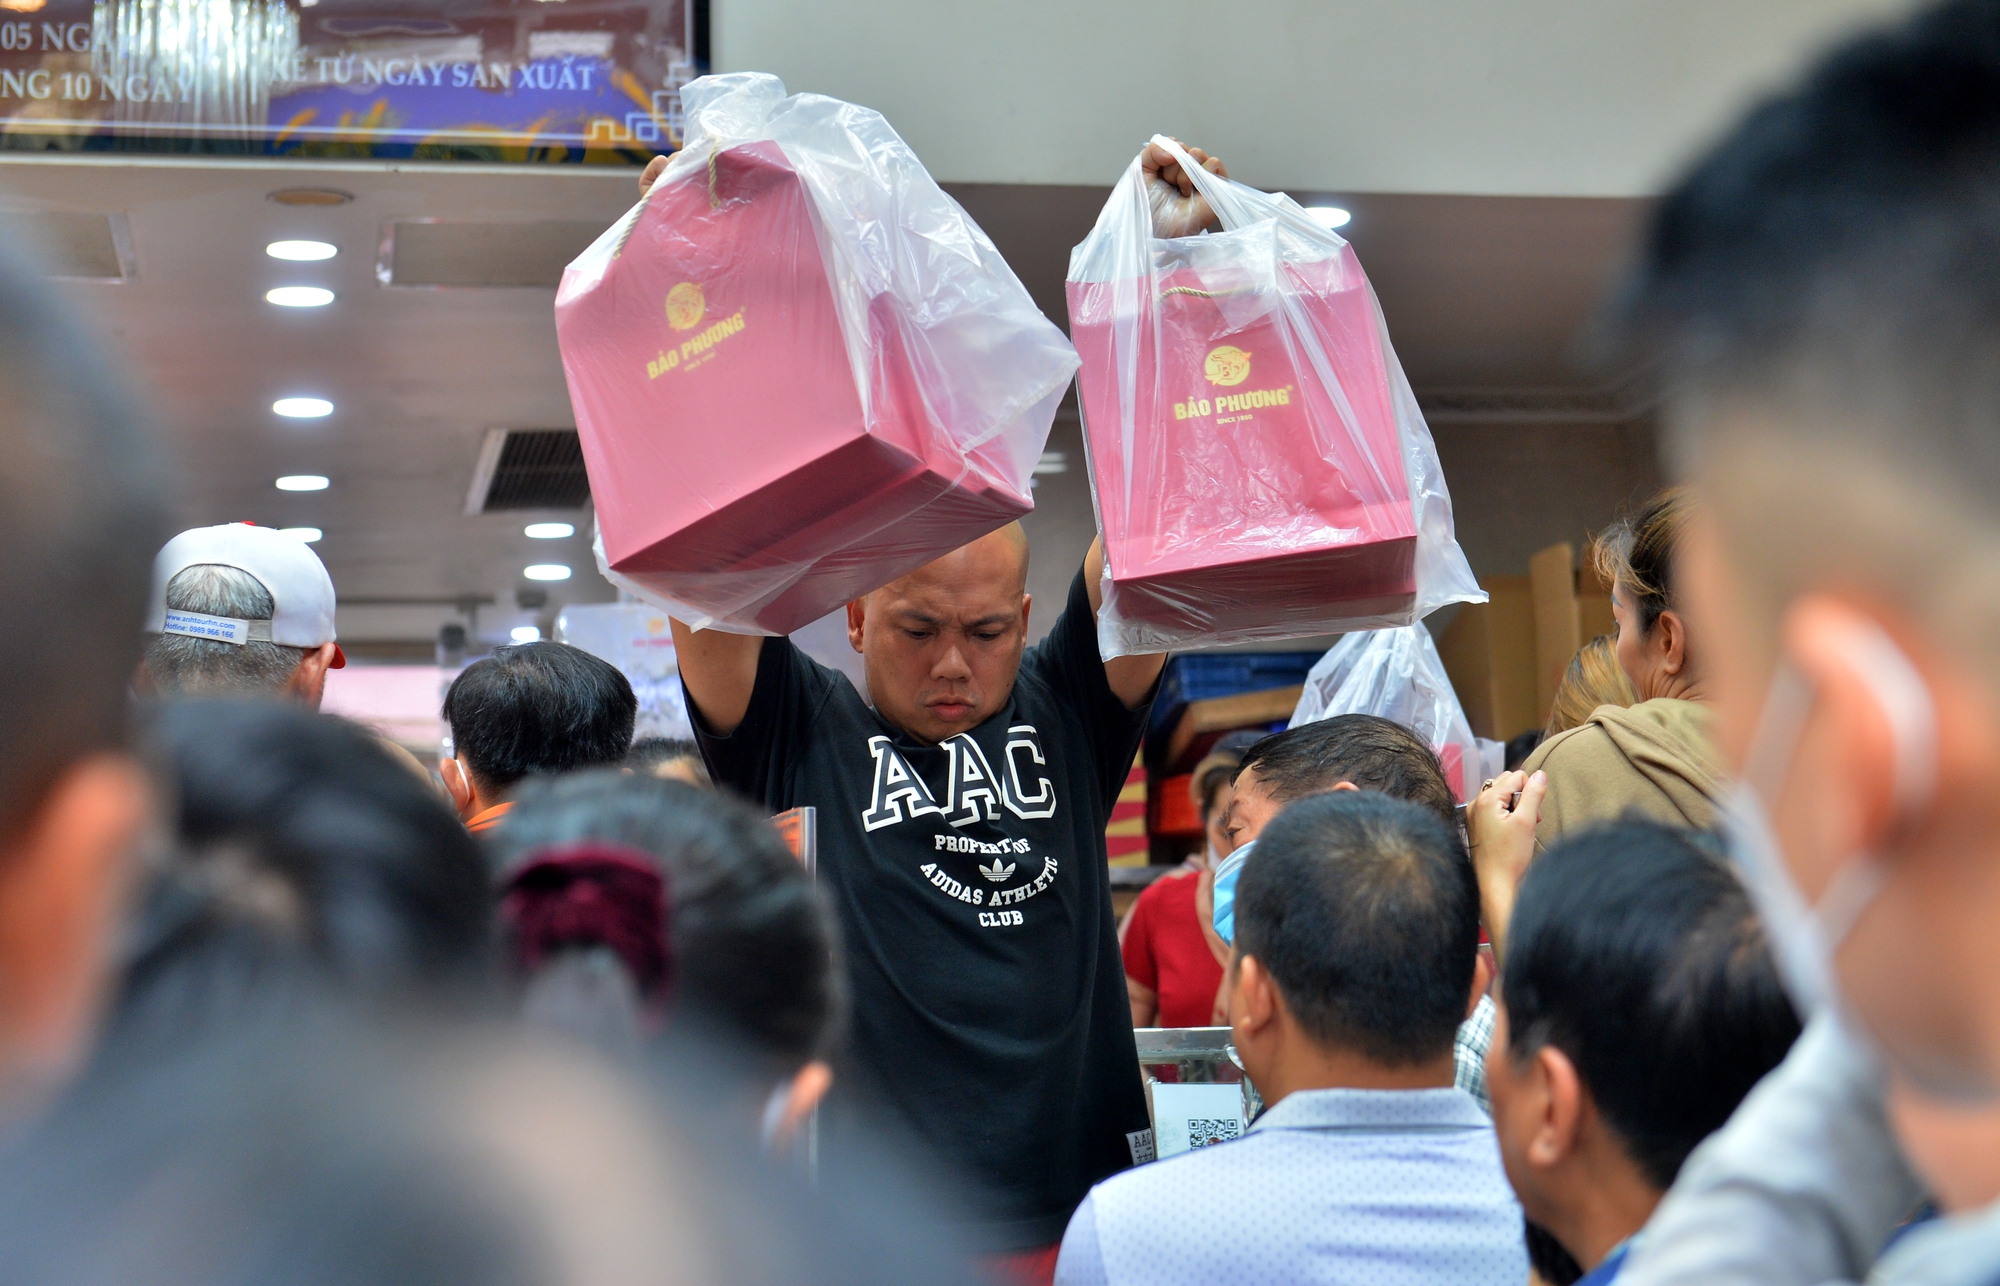 Hà Nội: Người dân xếp hàng dài, chờ cả tiếng đợi mua bánh trung thu truyền thống - Ảnh 8.